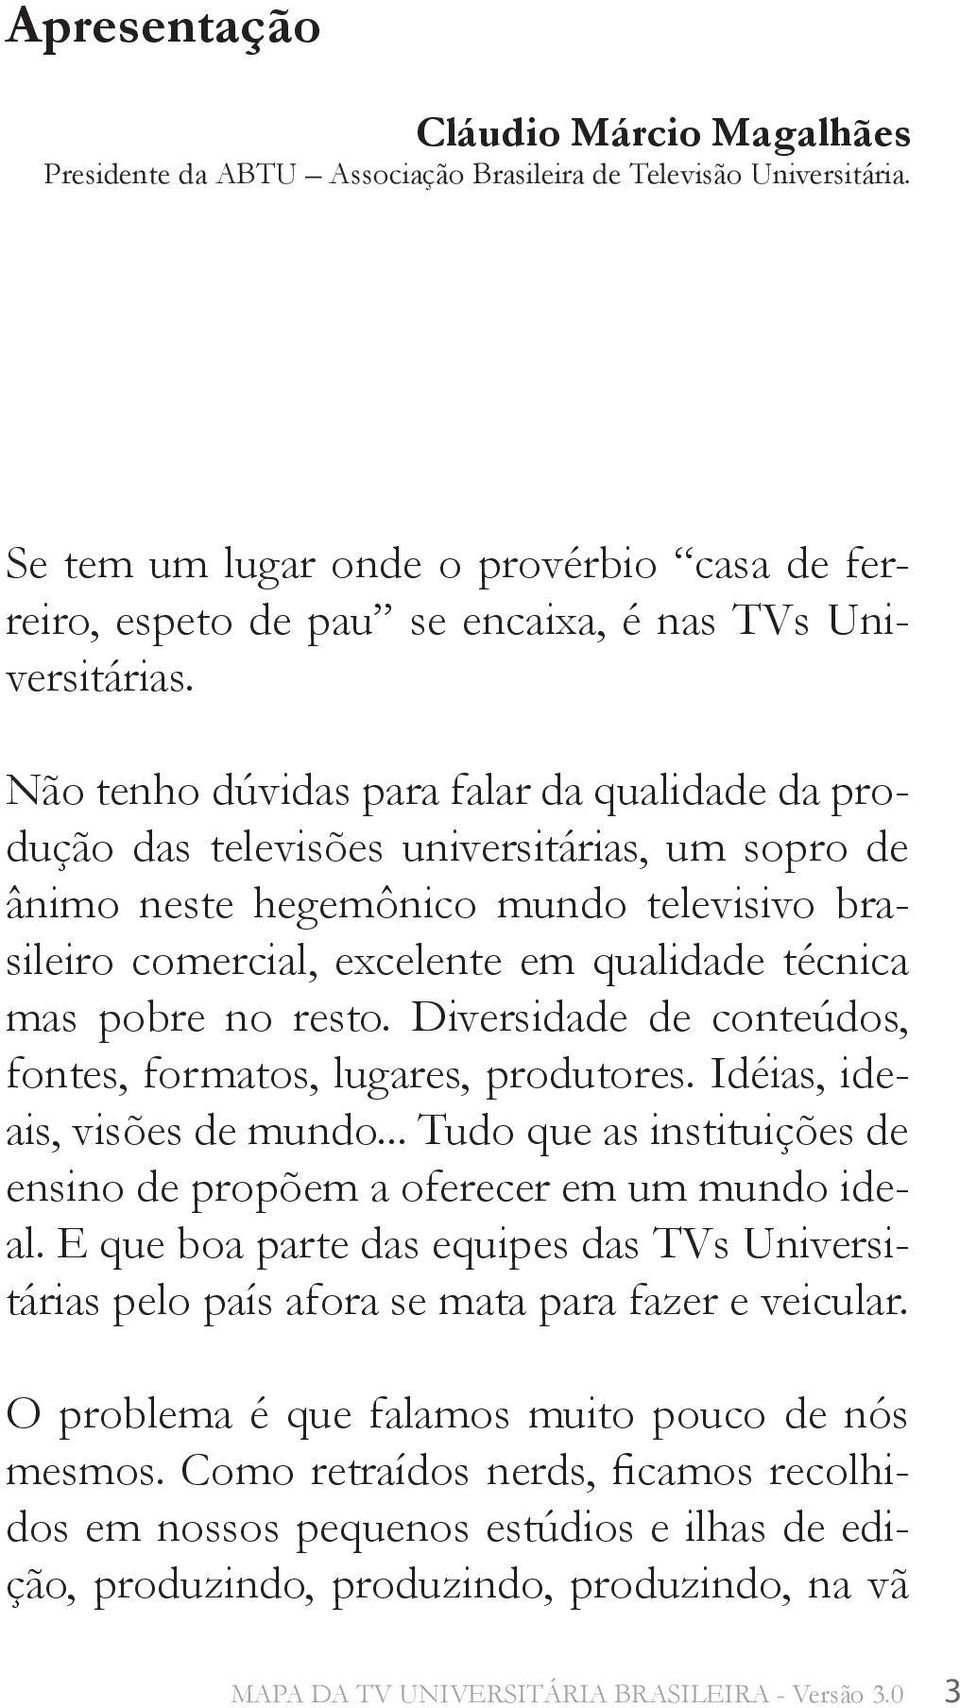 Não tenho dúvidas para falar da qualidade da produção das televisões universitárias, um sopro de ânimo neste hegemônico mundo televisivo brasileiro comercial, excelente em qualidade técnica mas pobre